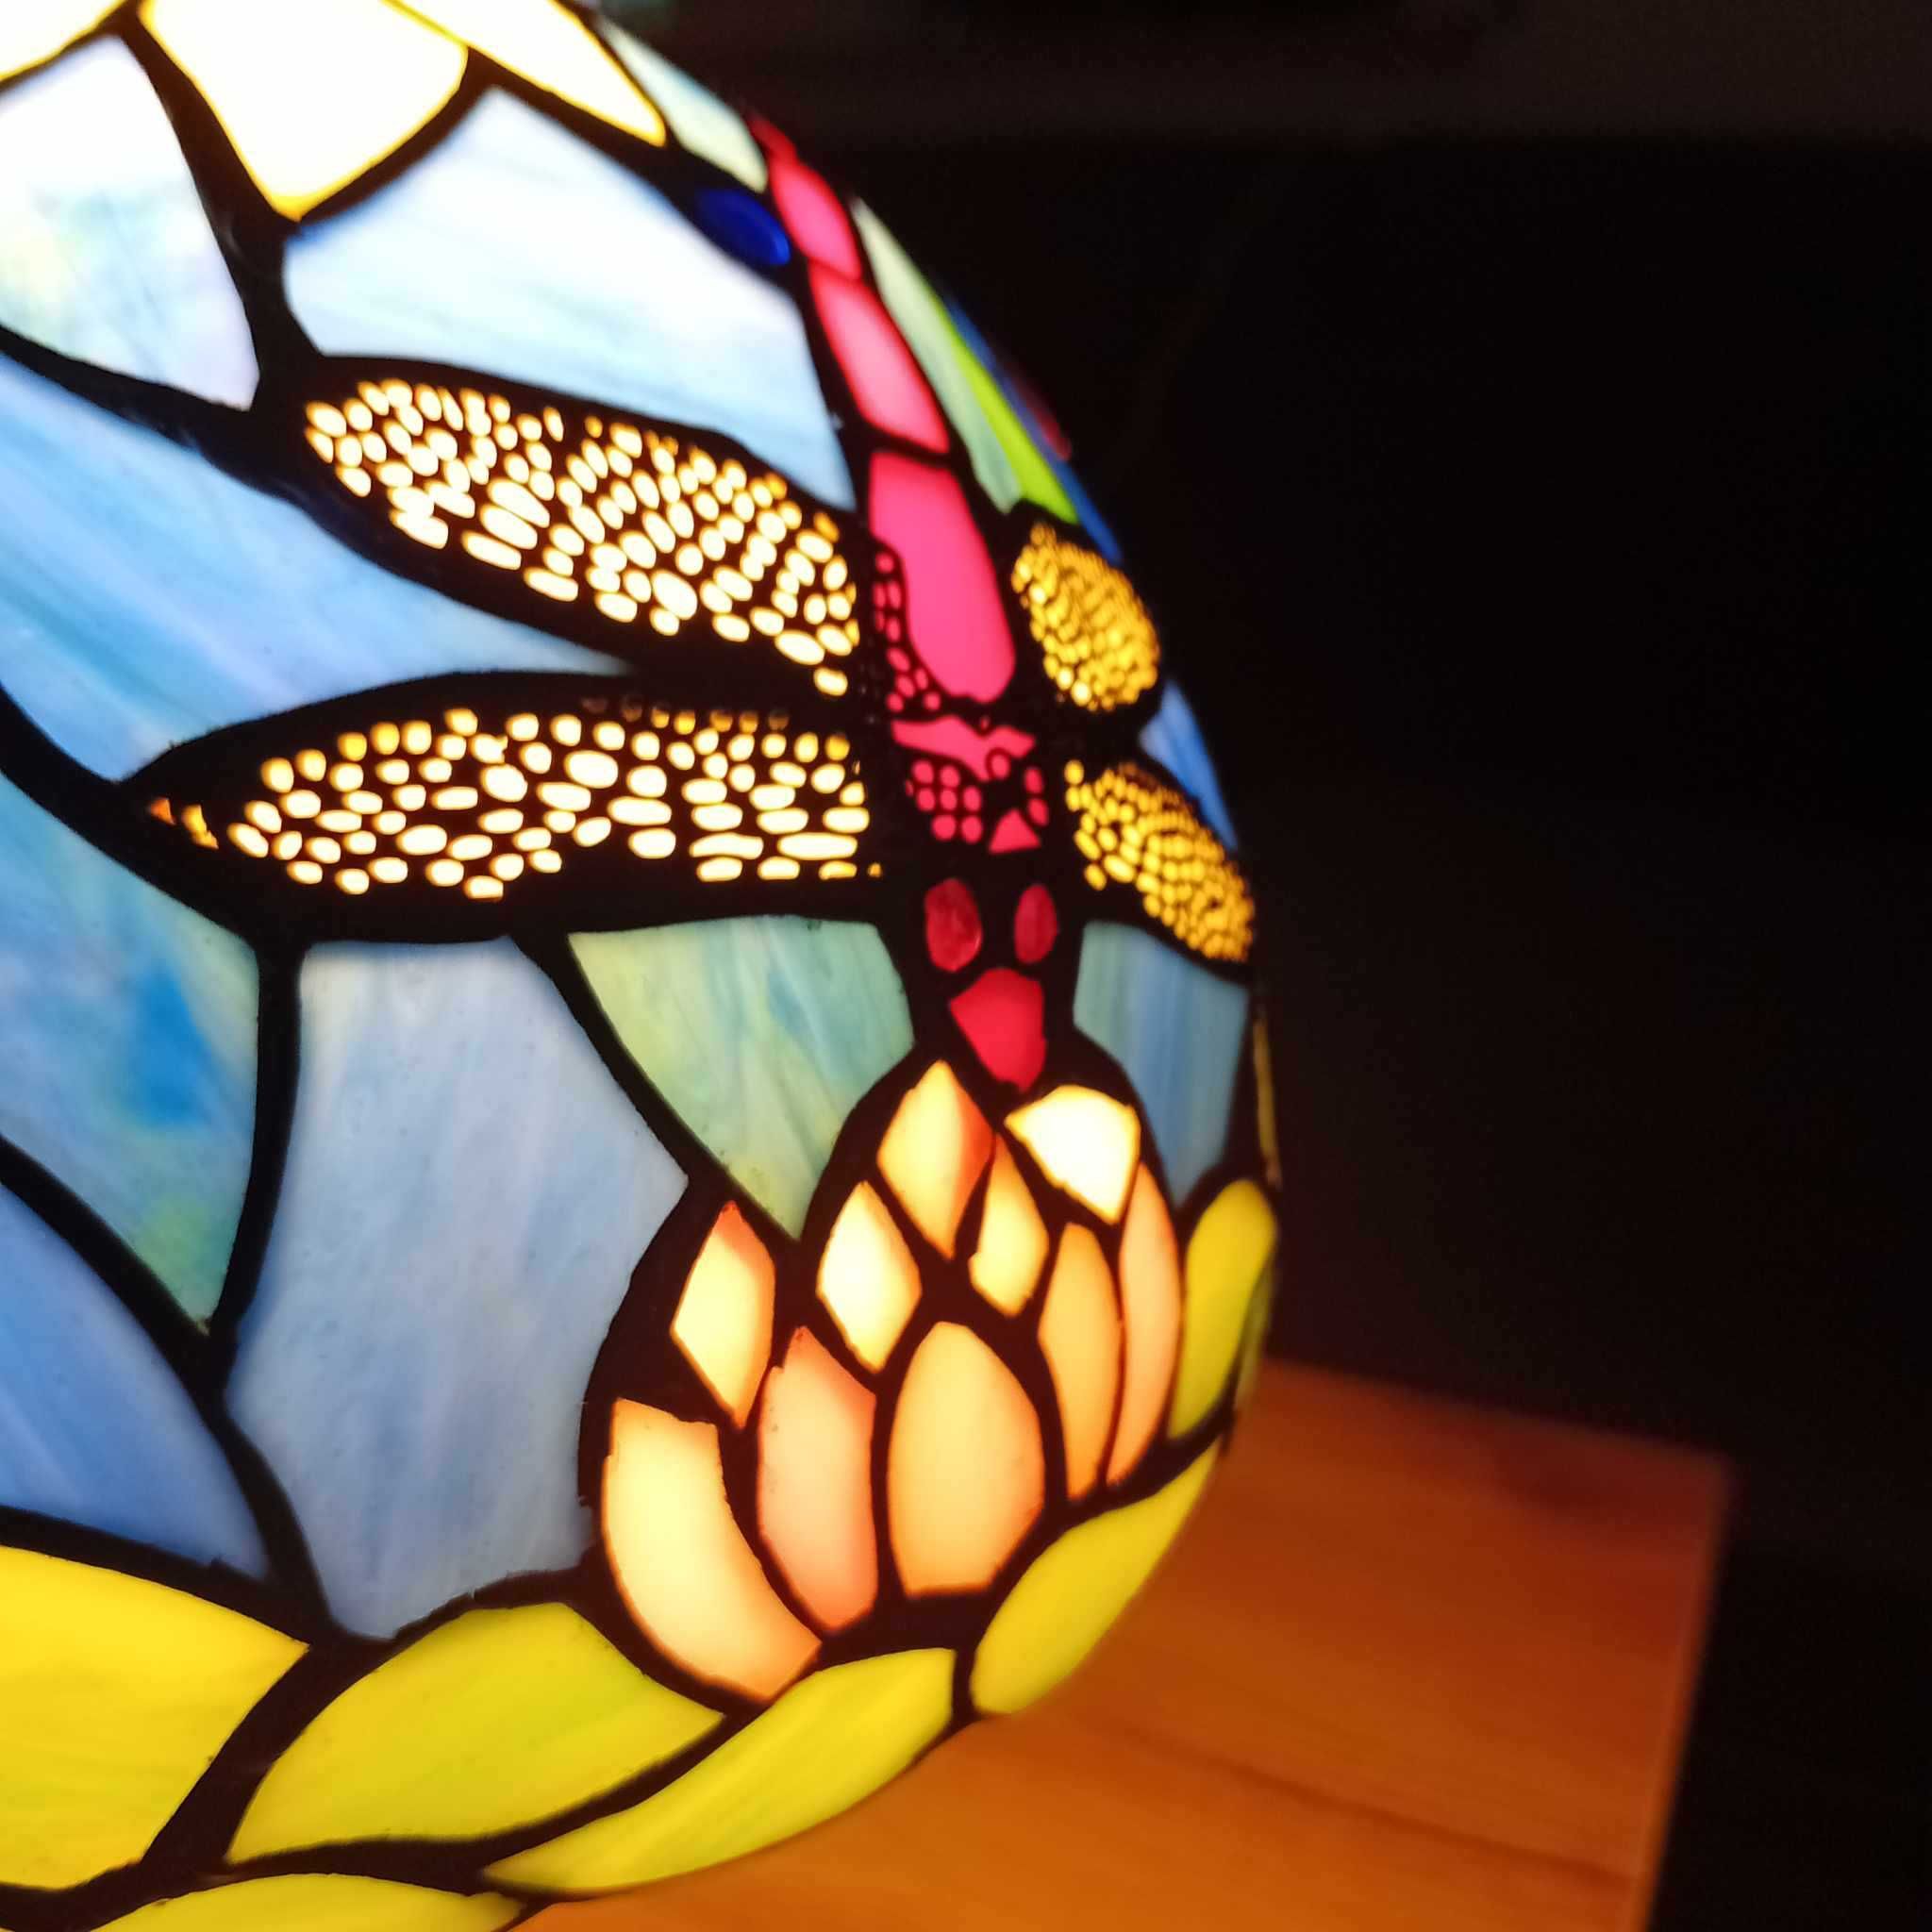 Lampa stojąca witrażowa w stylu Tiffany